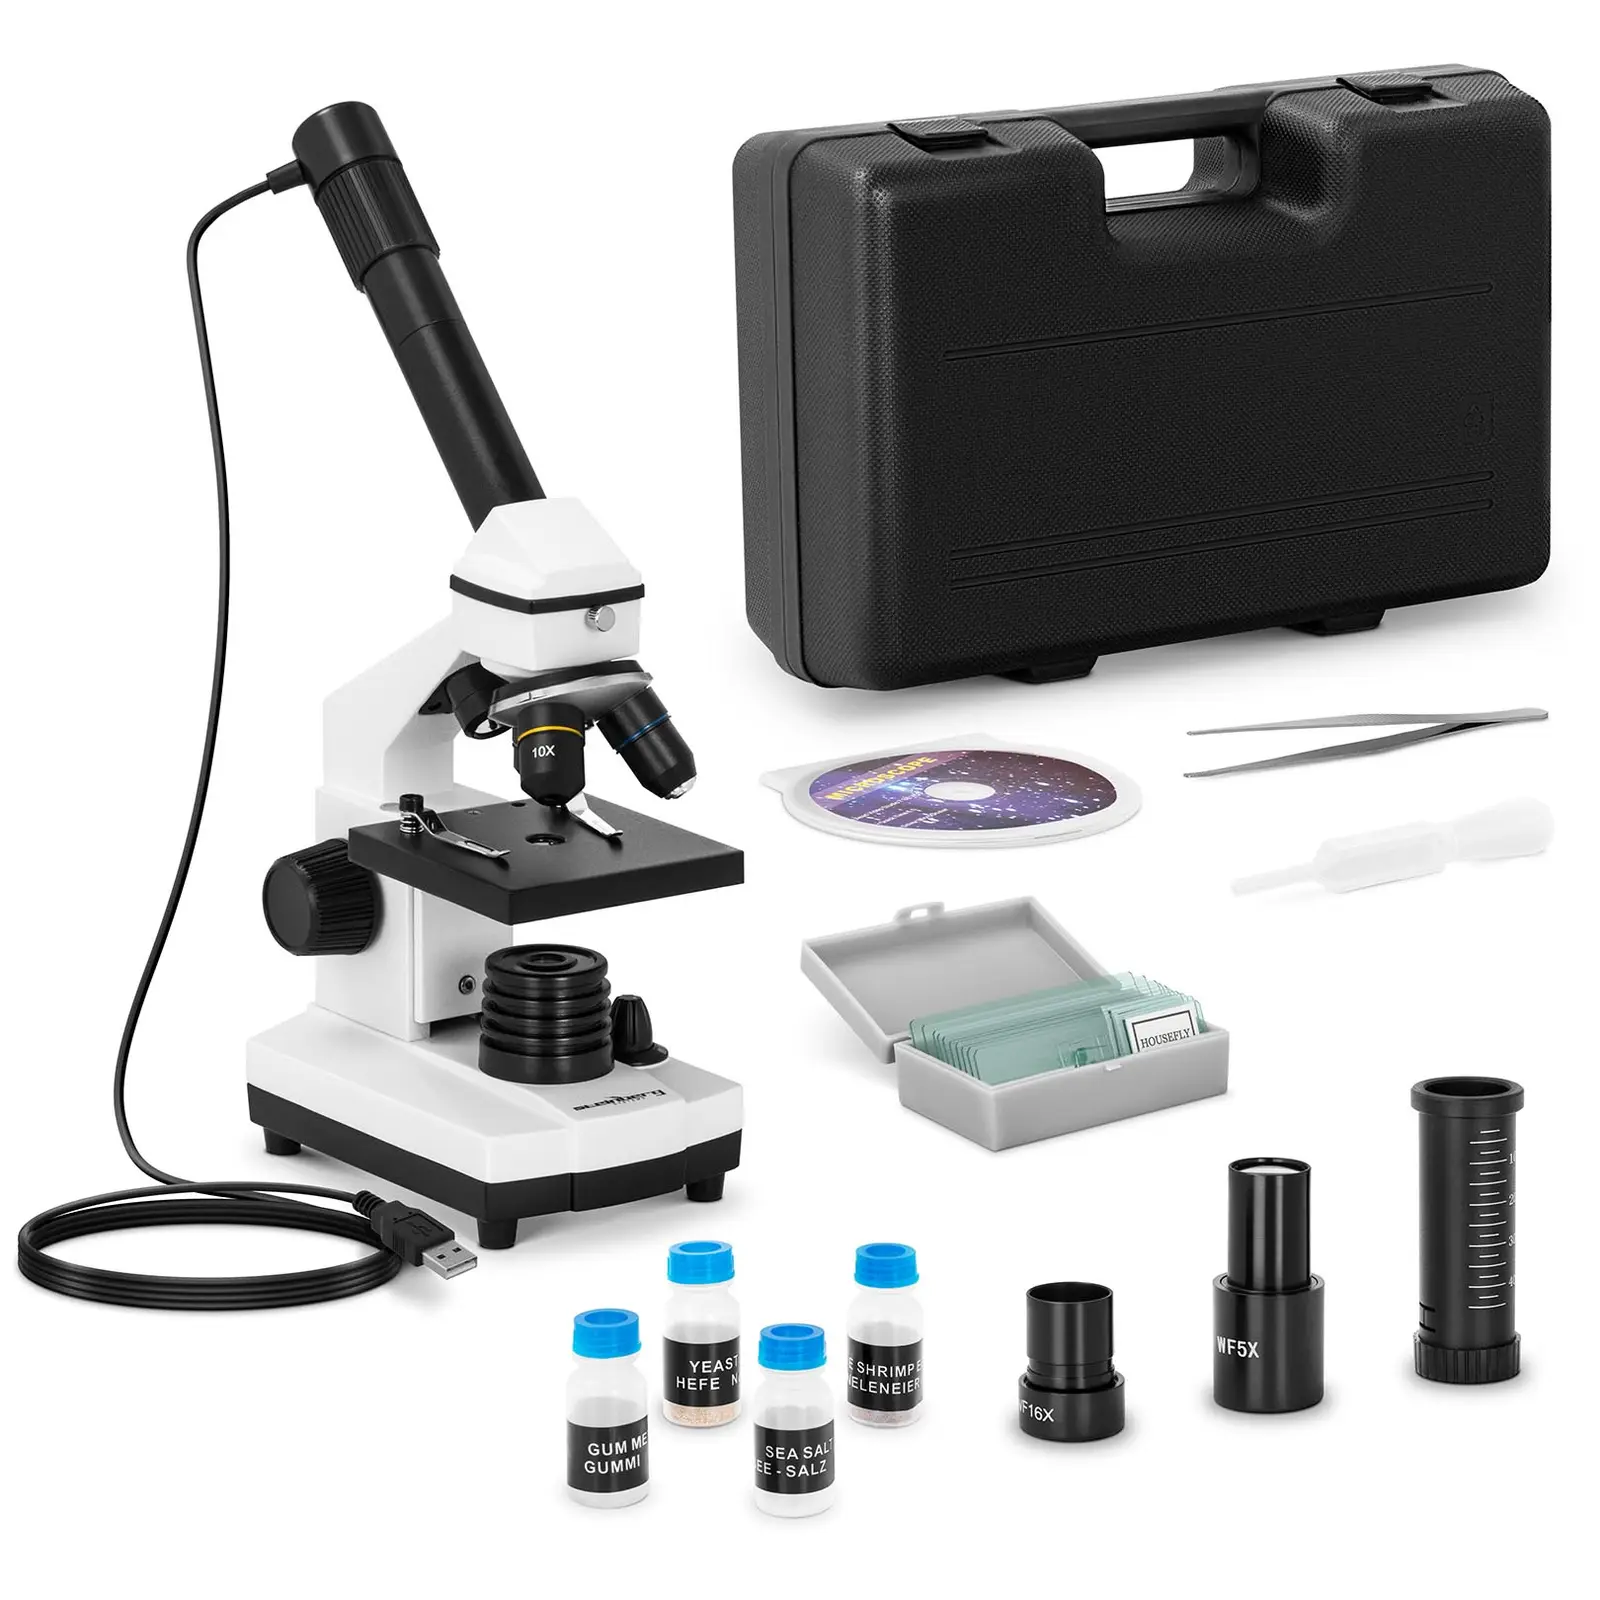 Microscopio - de 20 a 1.280 aumentos - cámara 10 MP - LED - accesorios incluidos